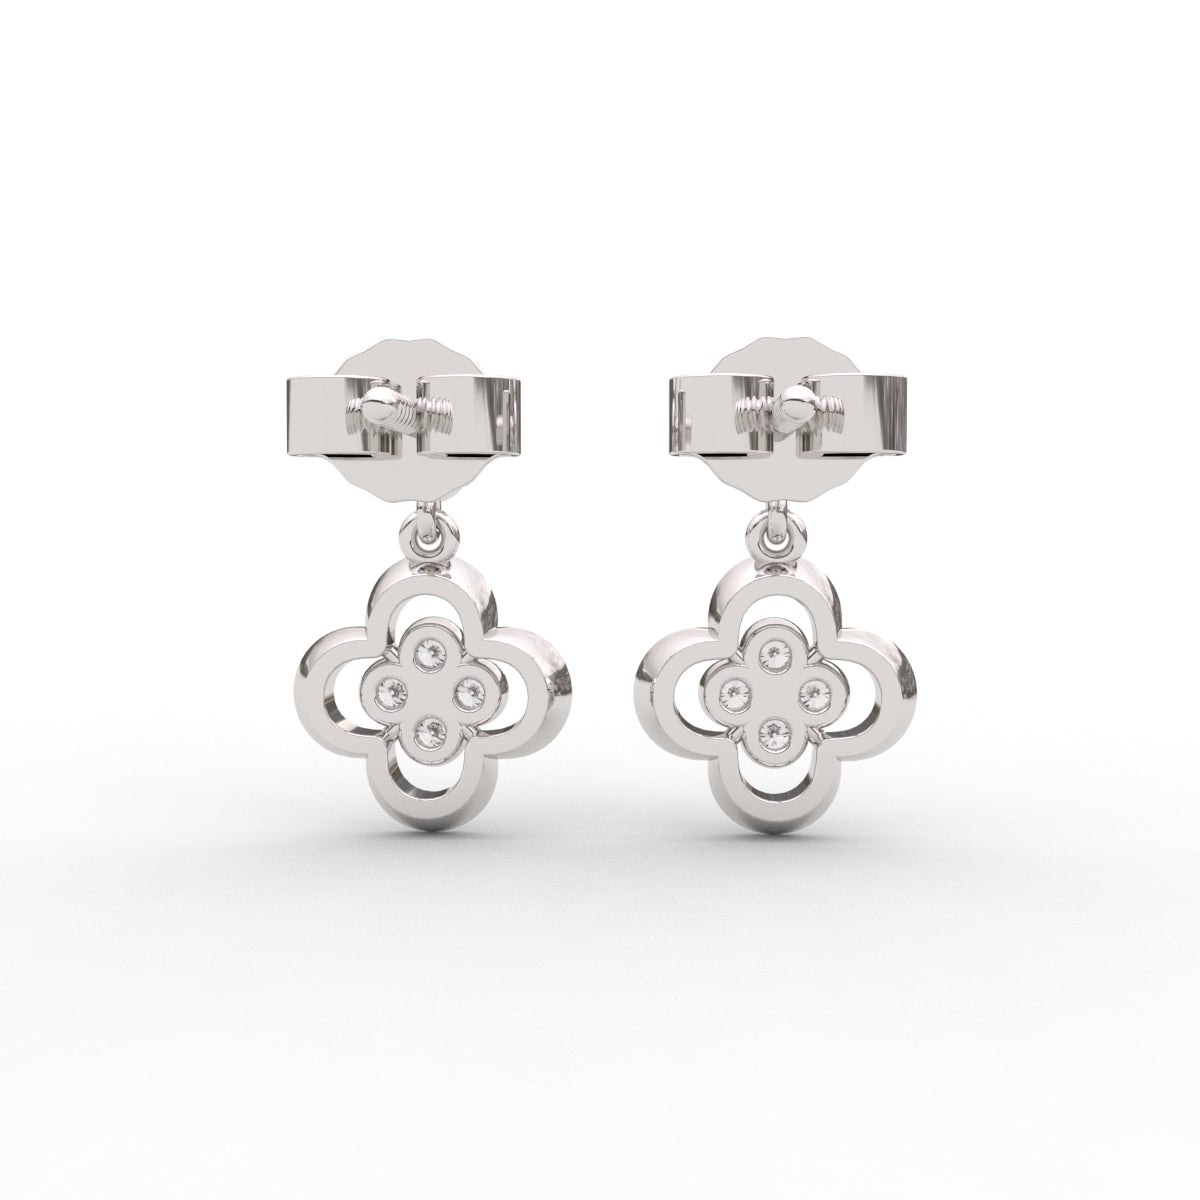 Designer Art Deco Earrings